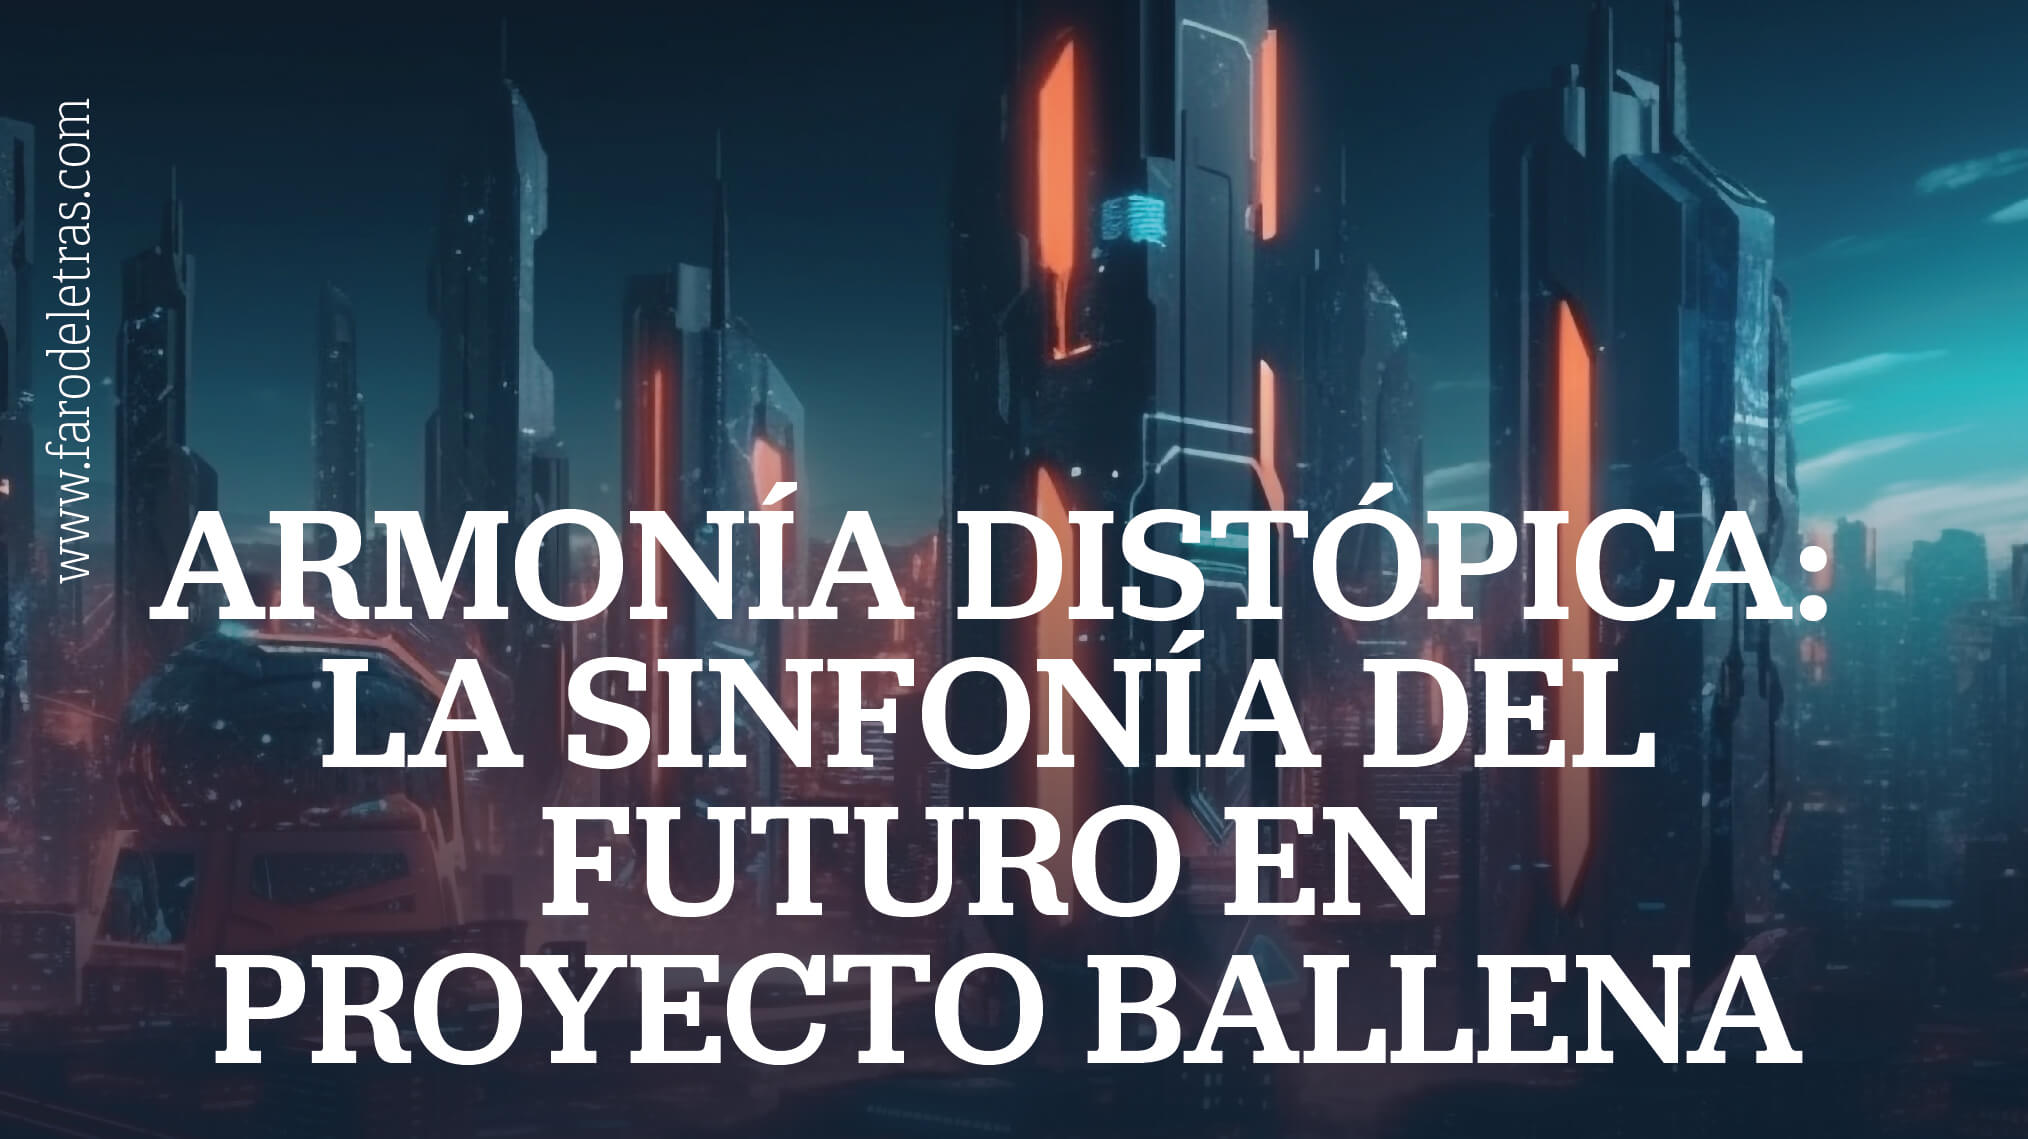 Armonia Distopica. La sinfonia del futuro en Proyecto Ballena